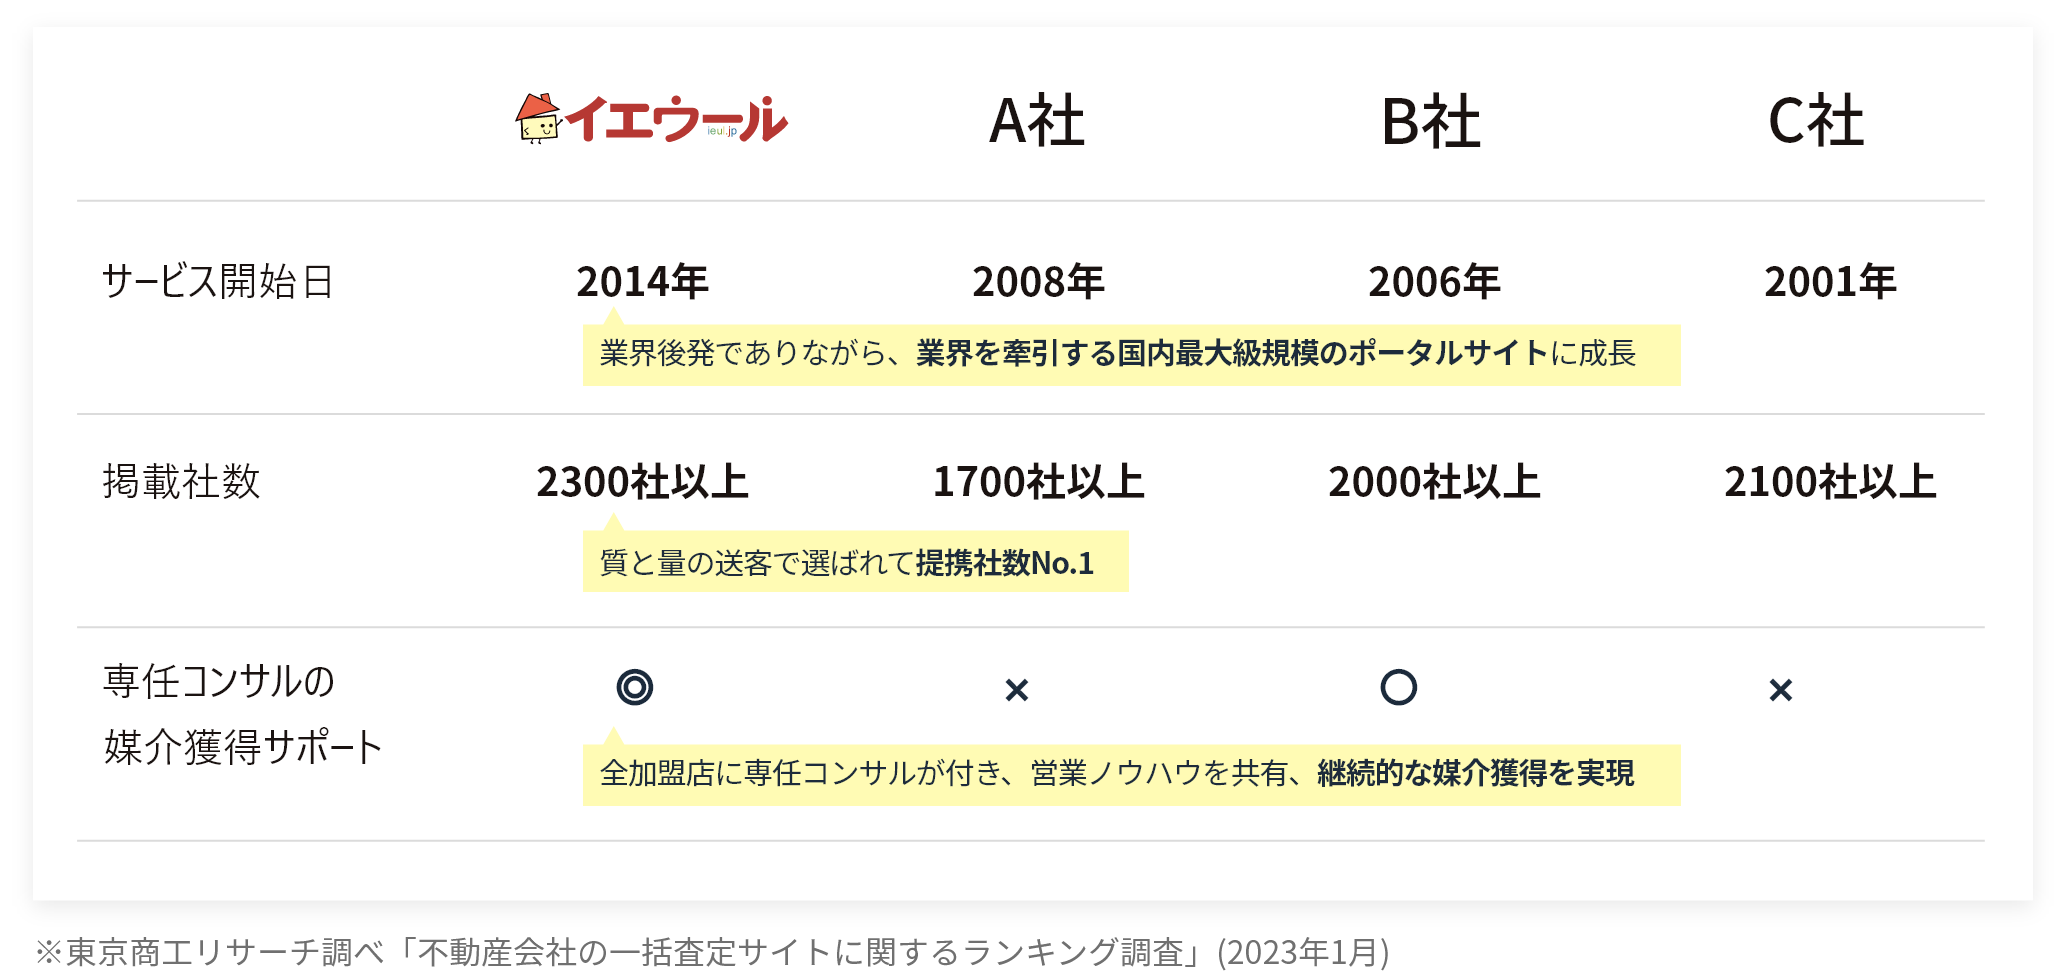 東京商工リサーチ調べ「不動産会社の一括査定サイトに関するランキング調査」(2023年1月)